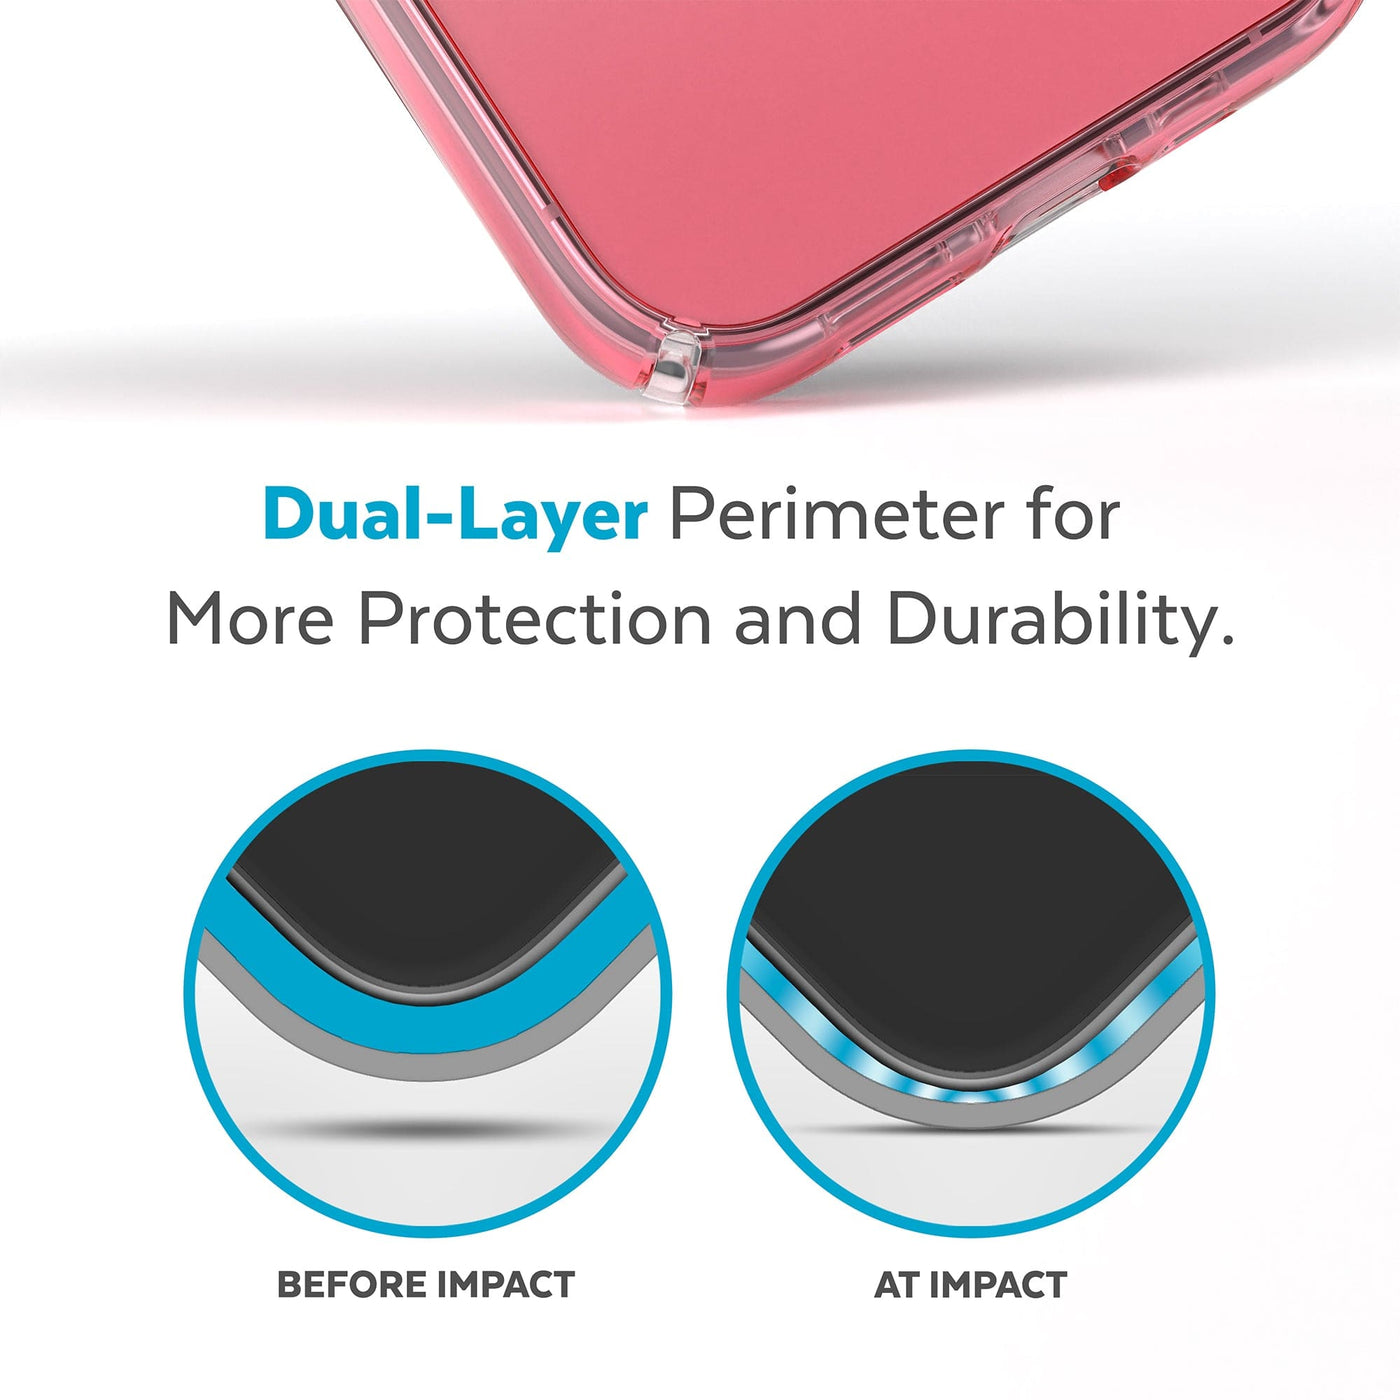 Multicolored logo transparent iPhone 14 Pro Max case